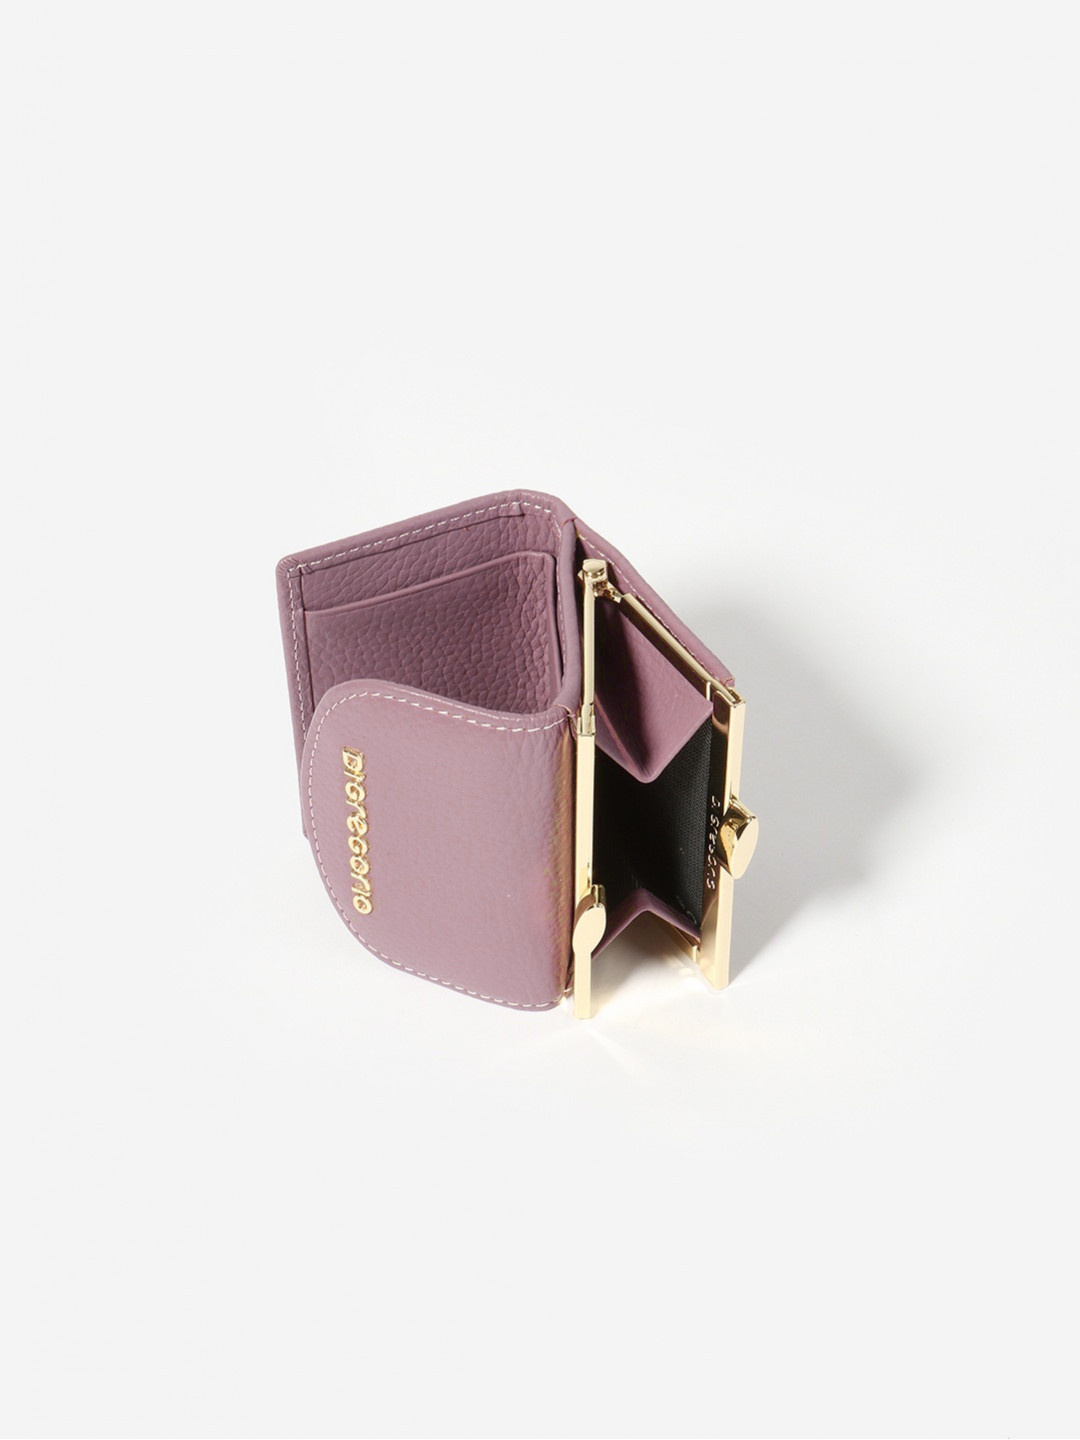 Фото Маленький женский кошелек из мягкой кожи с золотистым фермуаром Кошельки